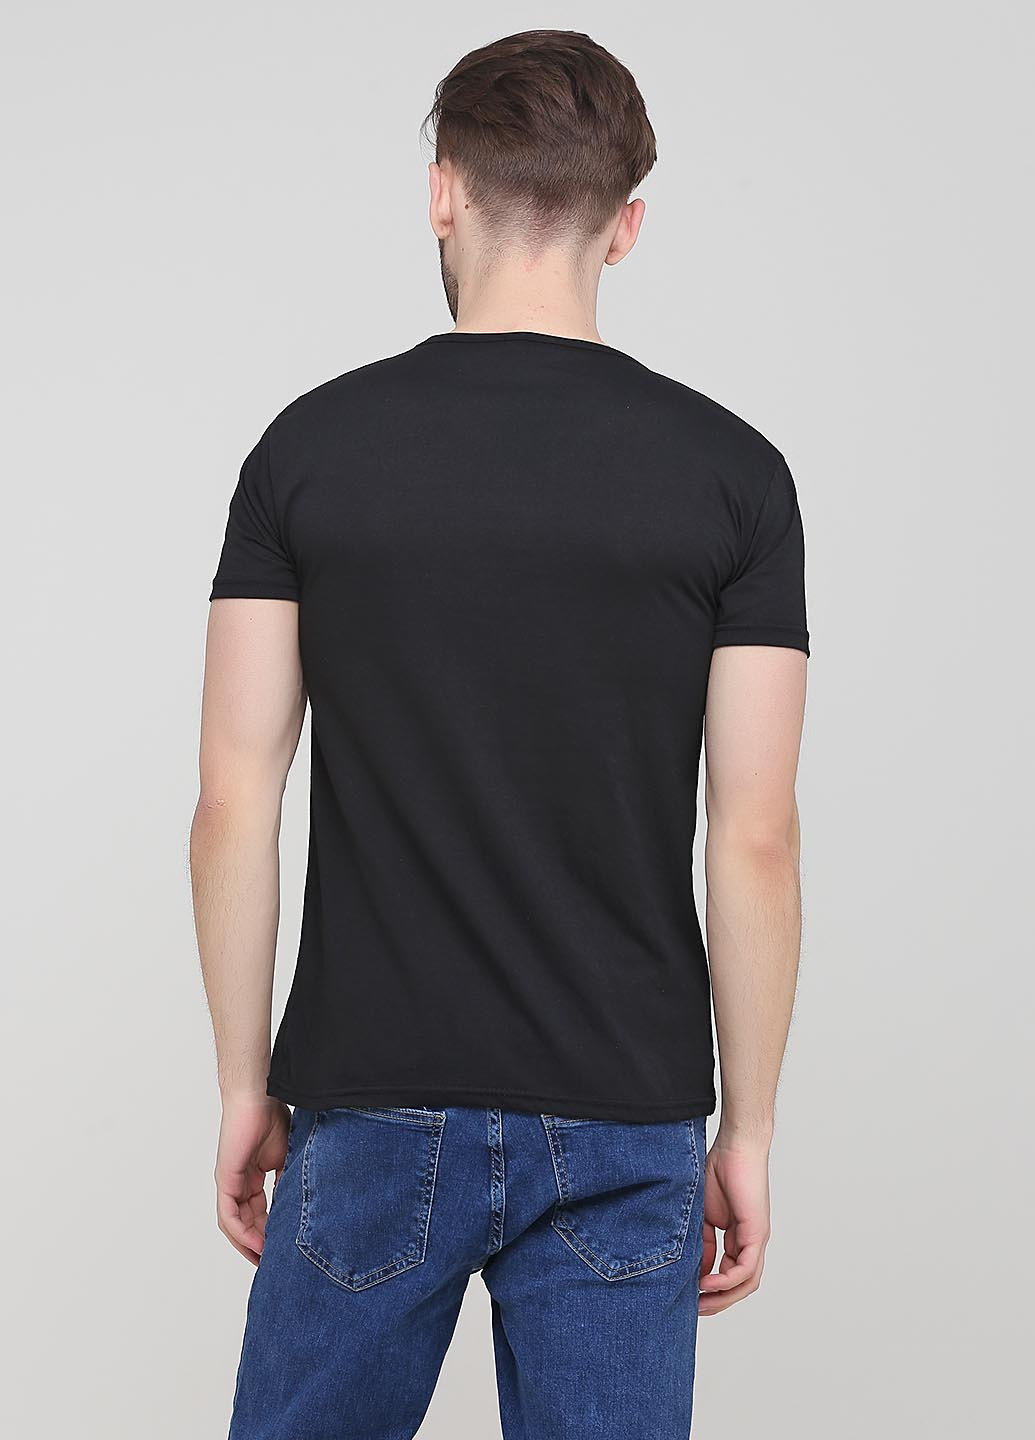 Черная летняя футболка Exelen